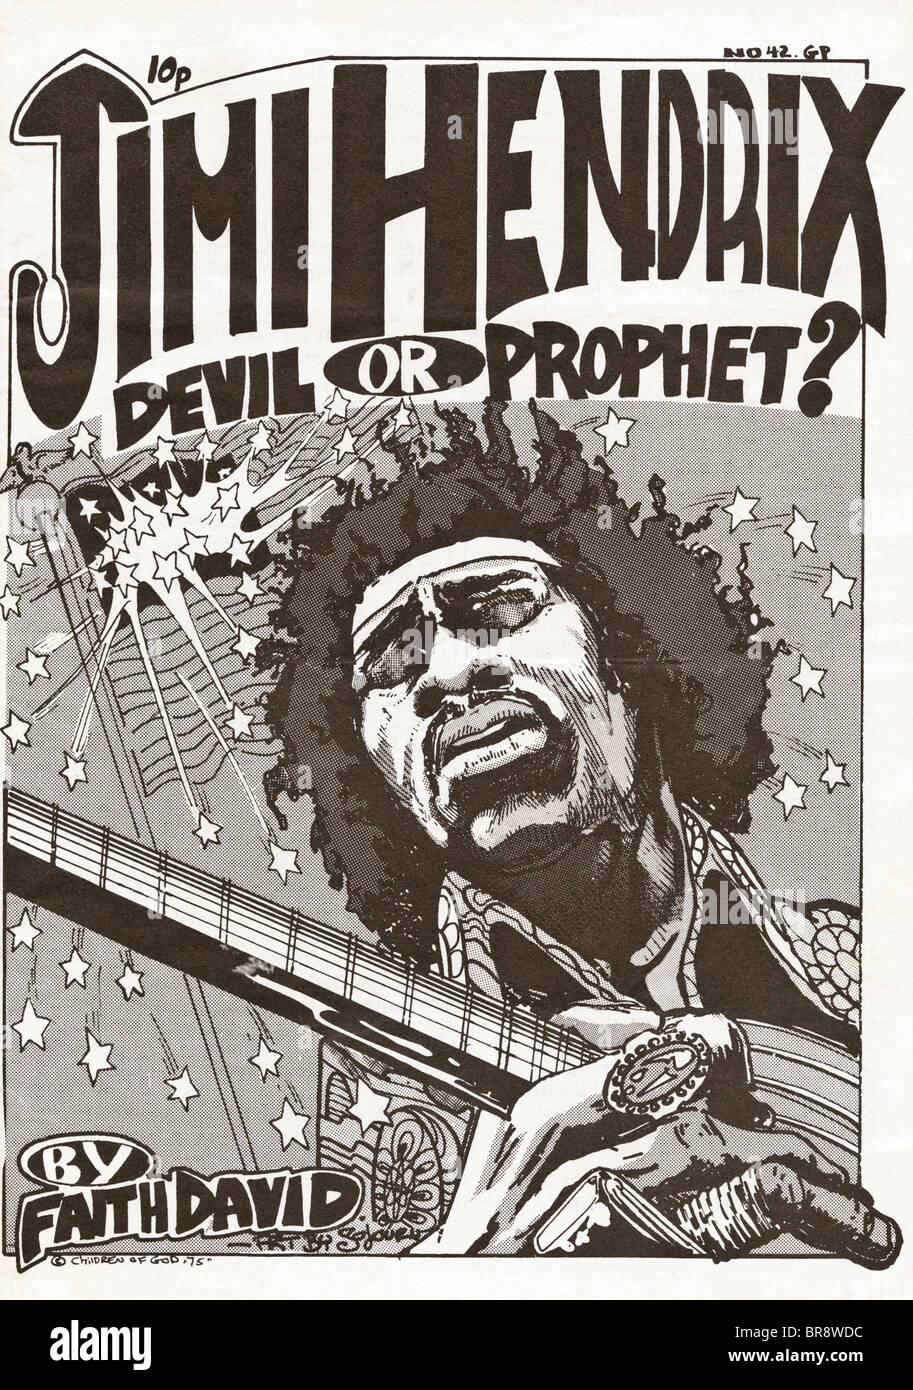 Jimi Hendrix Devil de prophète ? Par la foi David couverture de brochure par les enfants de Dieu un culte religieux vers 1975 Banque D'Images